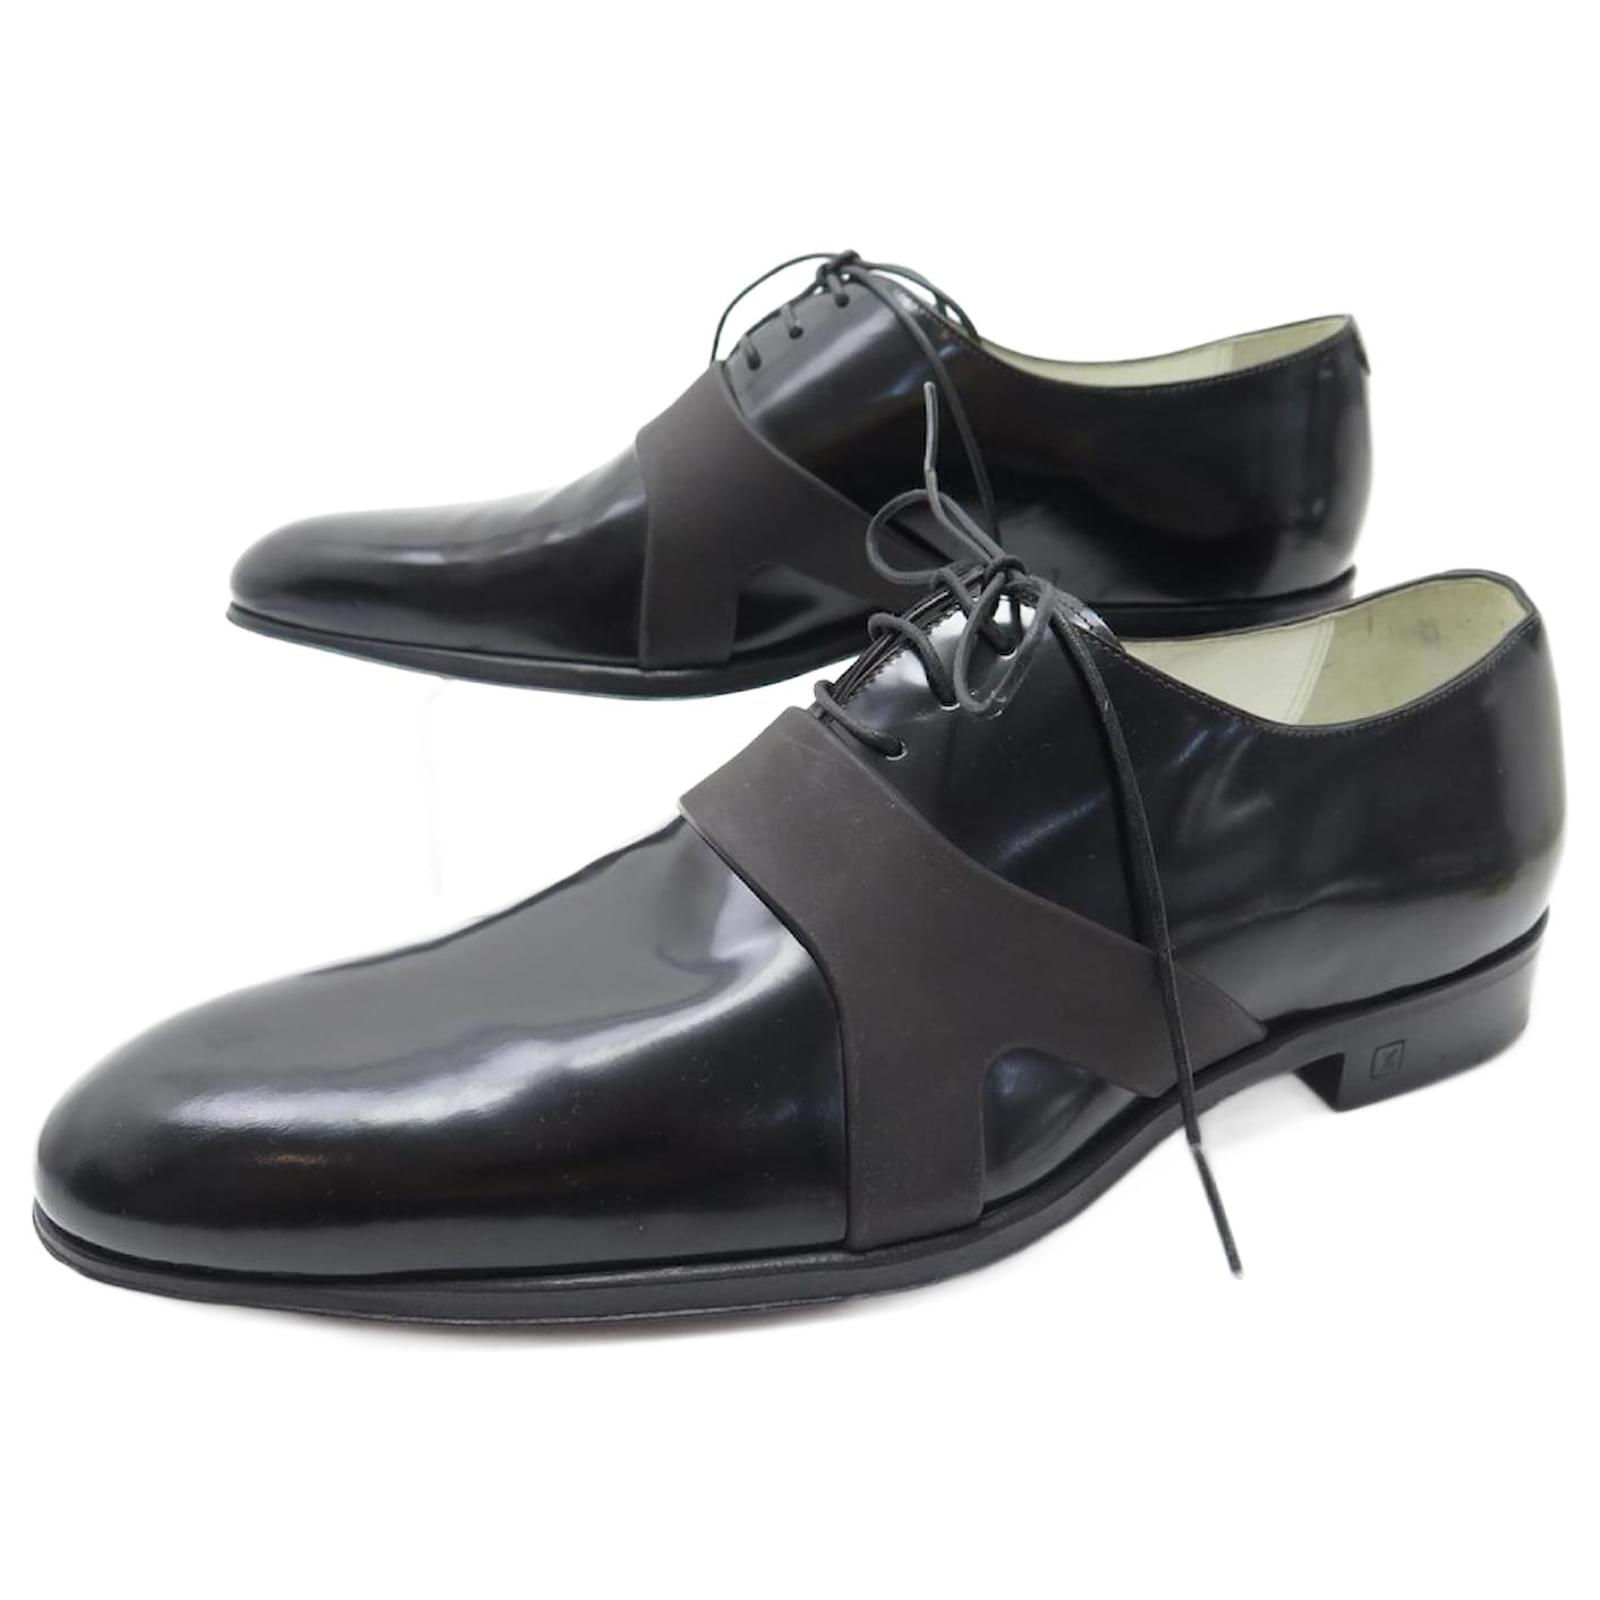 Louis Vuitton, Shoes, Louis Vuitton Formal Richelieu Mens Dress Shoes